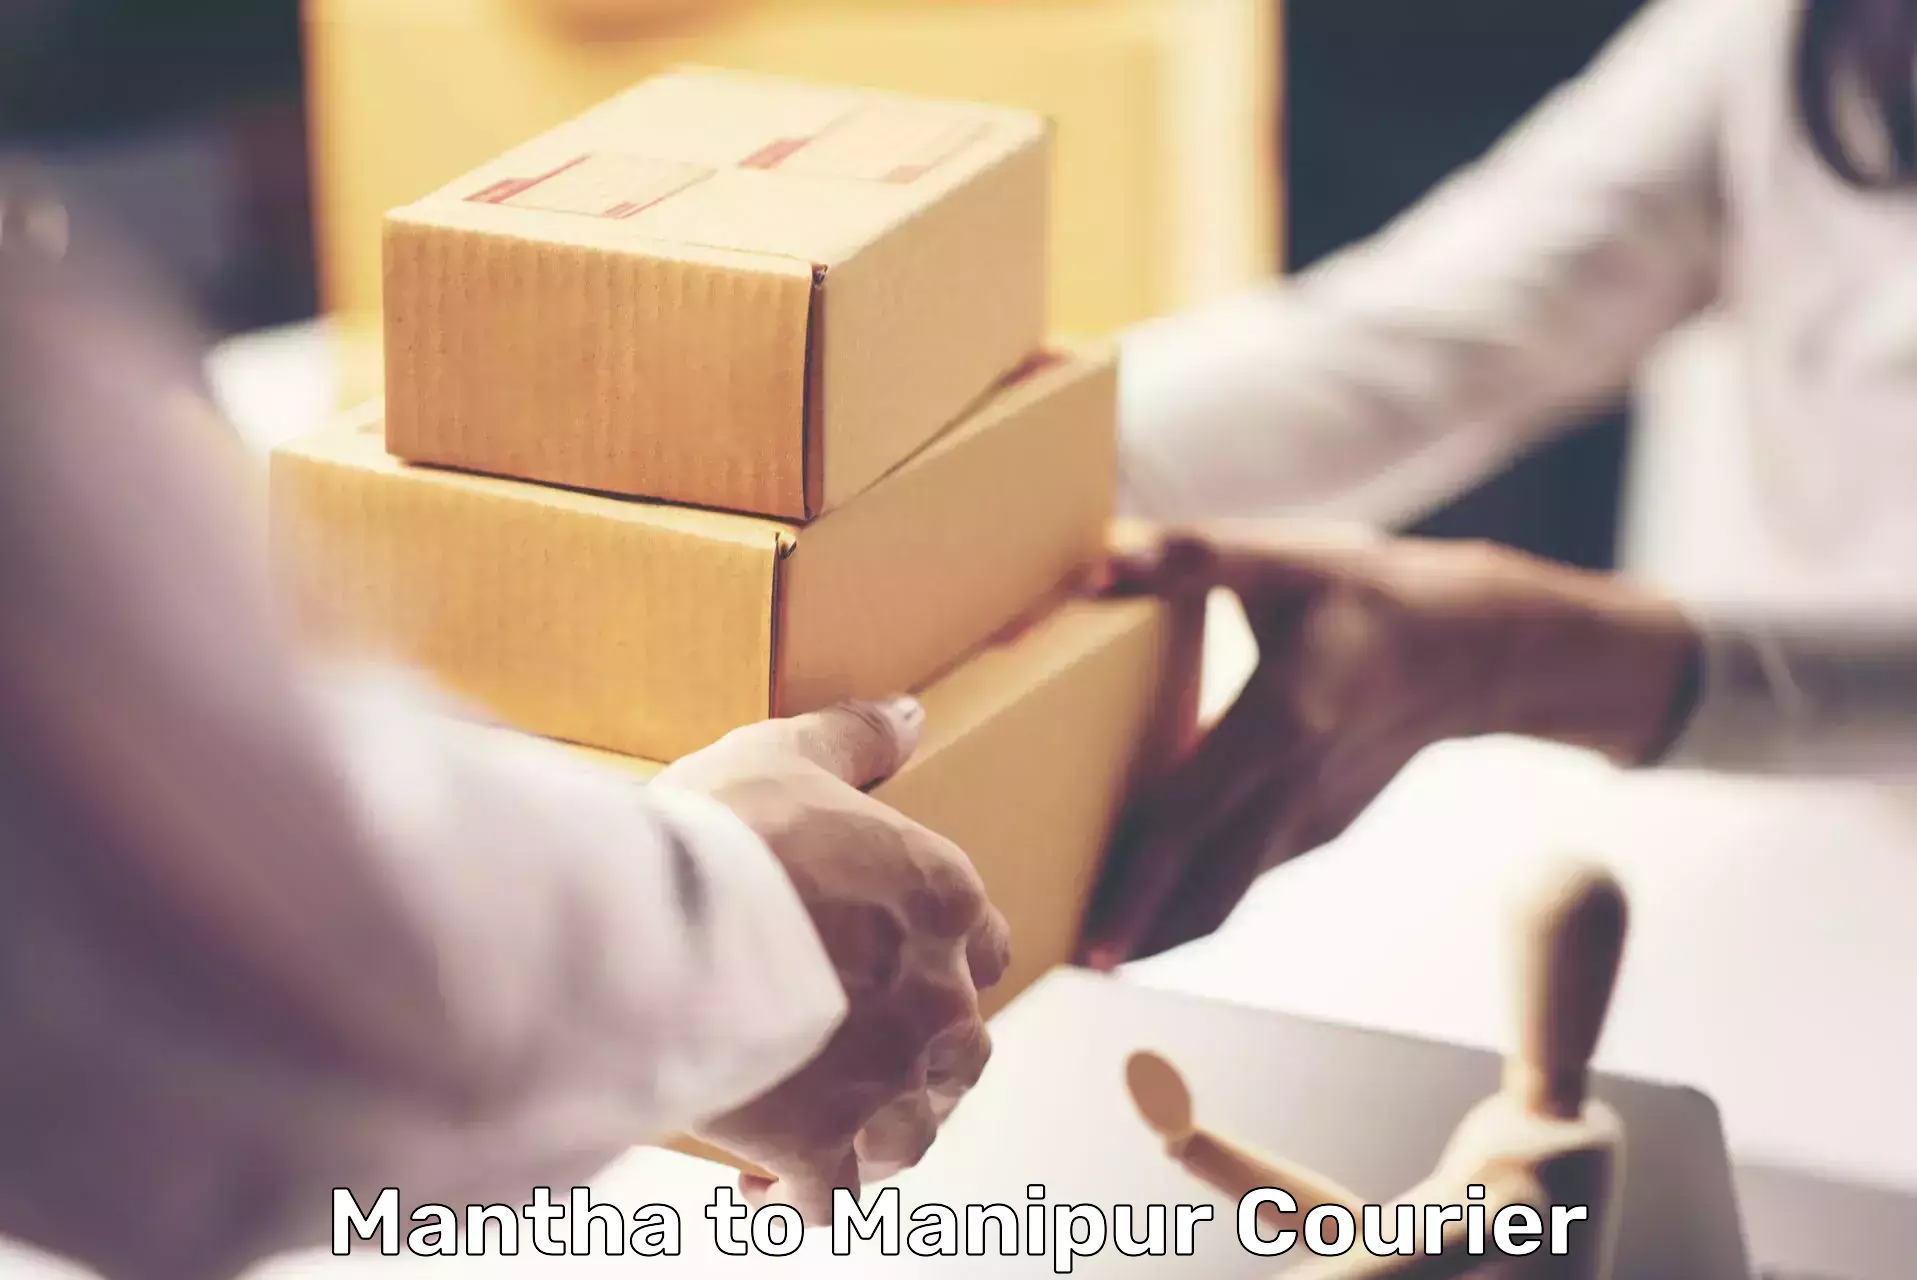 Courier service comparison in Mantha to Churachandpur